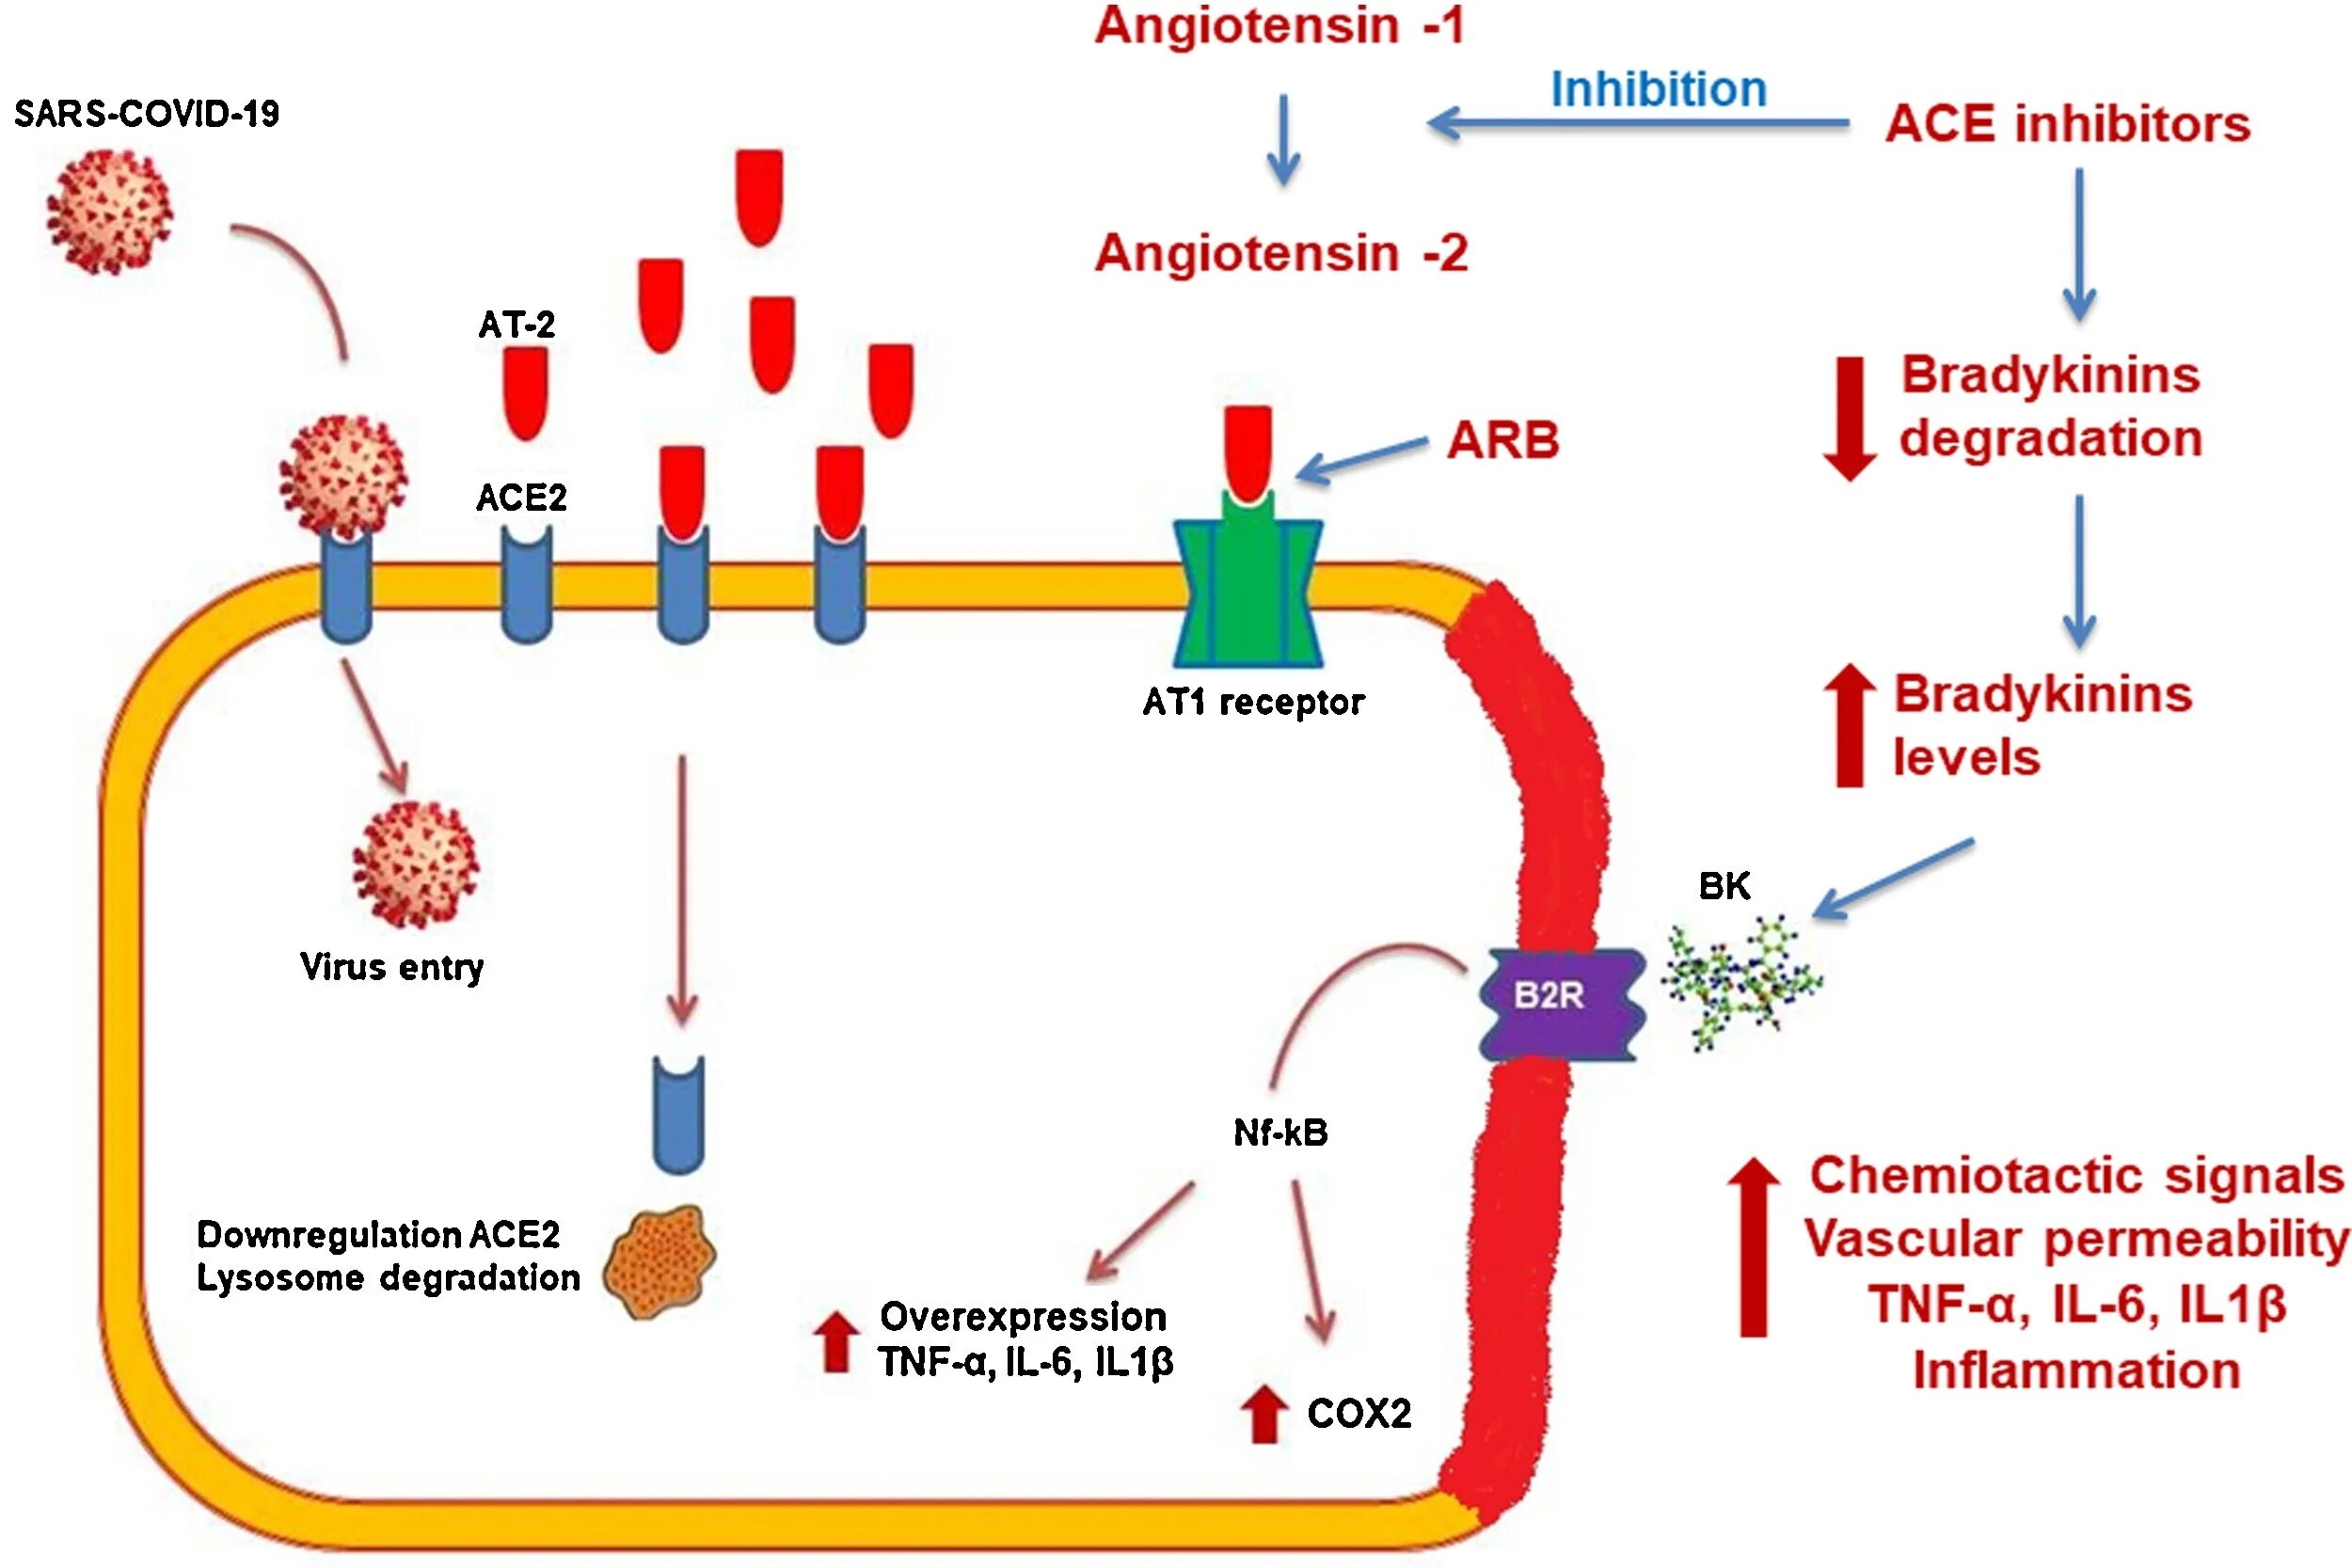 Ace inhibitors. Angiotensin receptor. Опухоль секретирующая ангиотензин II. Ace inhibitors drugs.